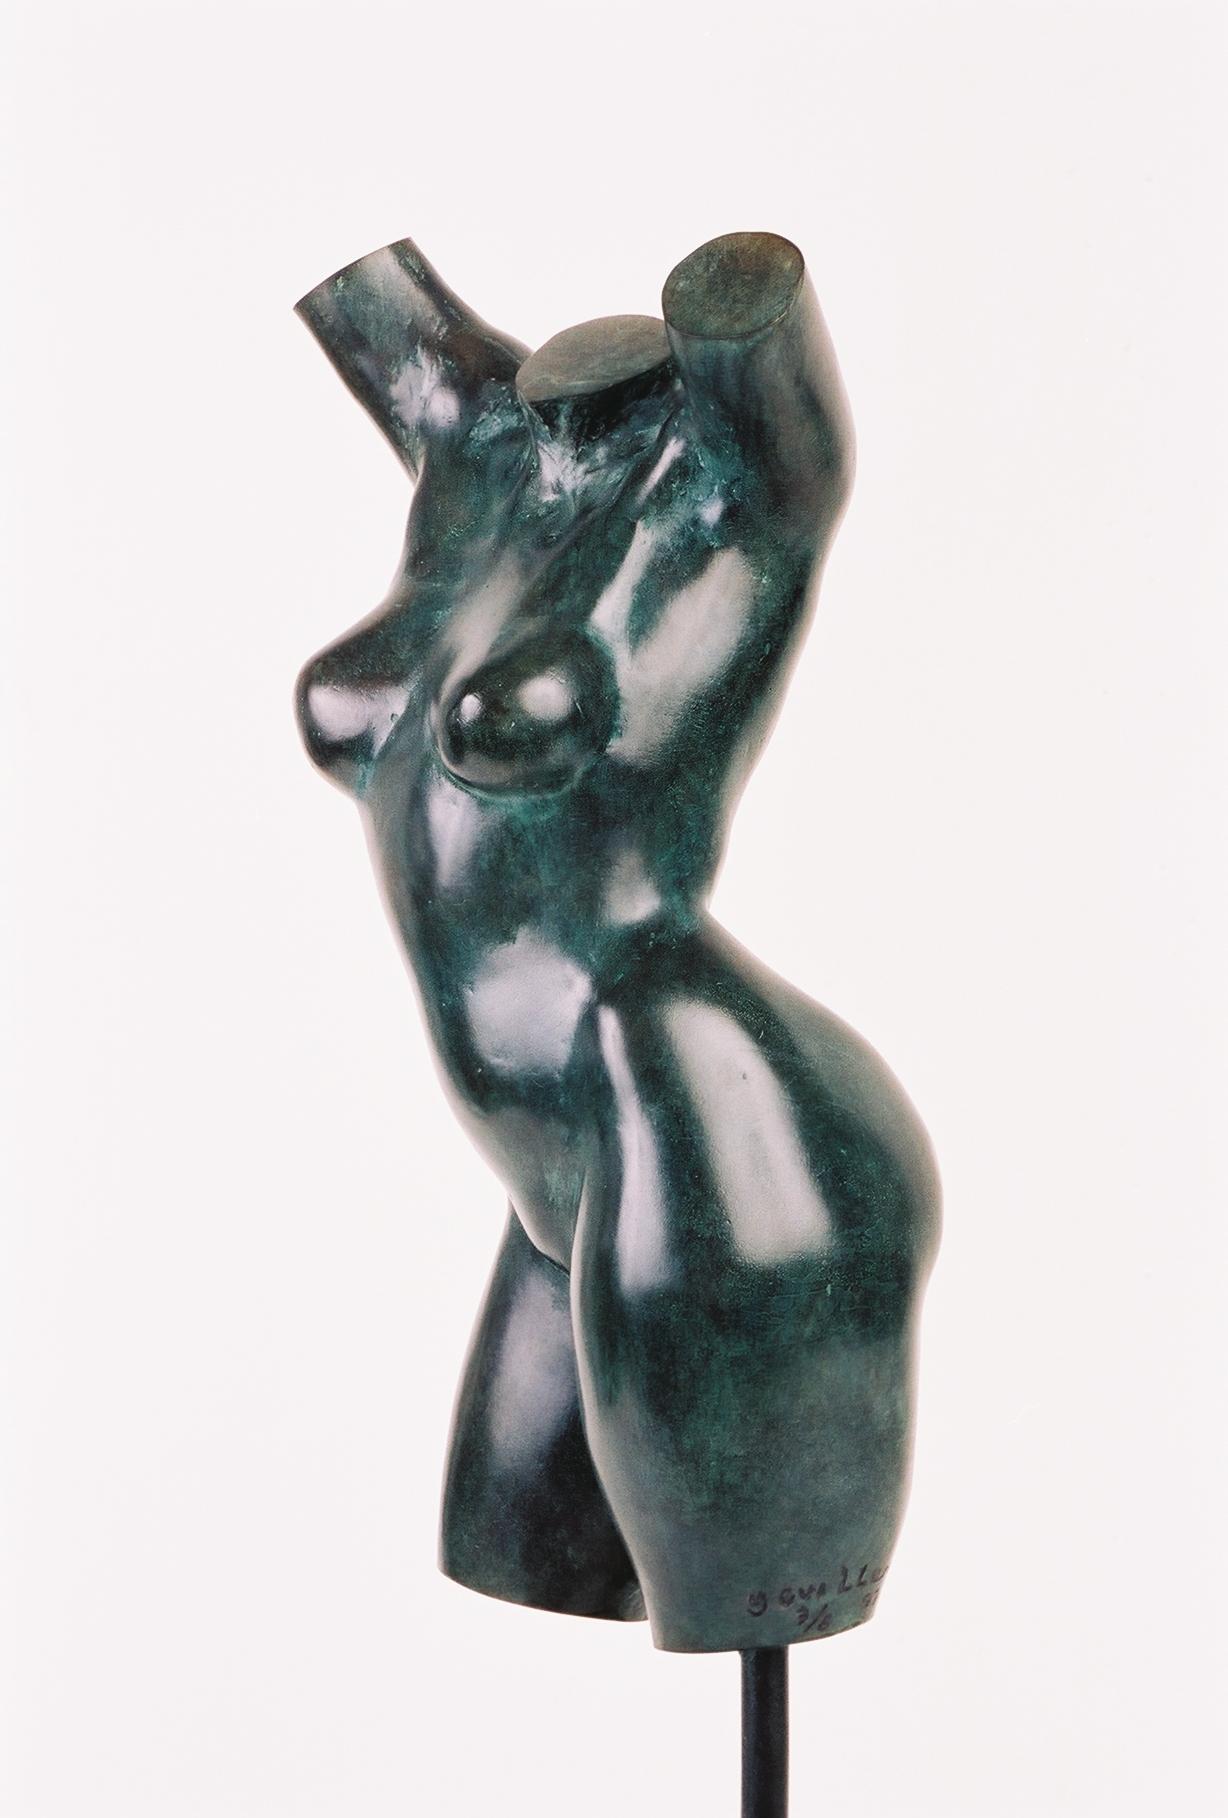 Carolines Torso (Torse de Caroline) ist eine Bronzeskulptur des französischen zeitgenössischen Bildhauers Yann Guillon.
Limitierte Auflage von 8 Stück + 4 Künstlerabzüge. Signiert und nummeriert, verkauft mit Messingfuß (Höhe der Skulptur: 30 cm,